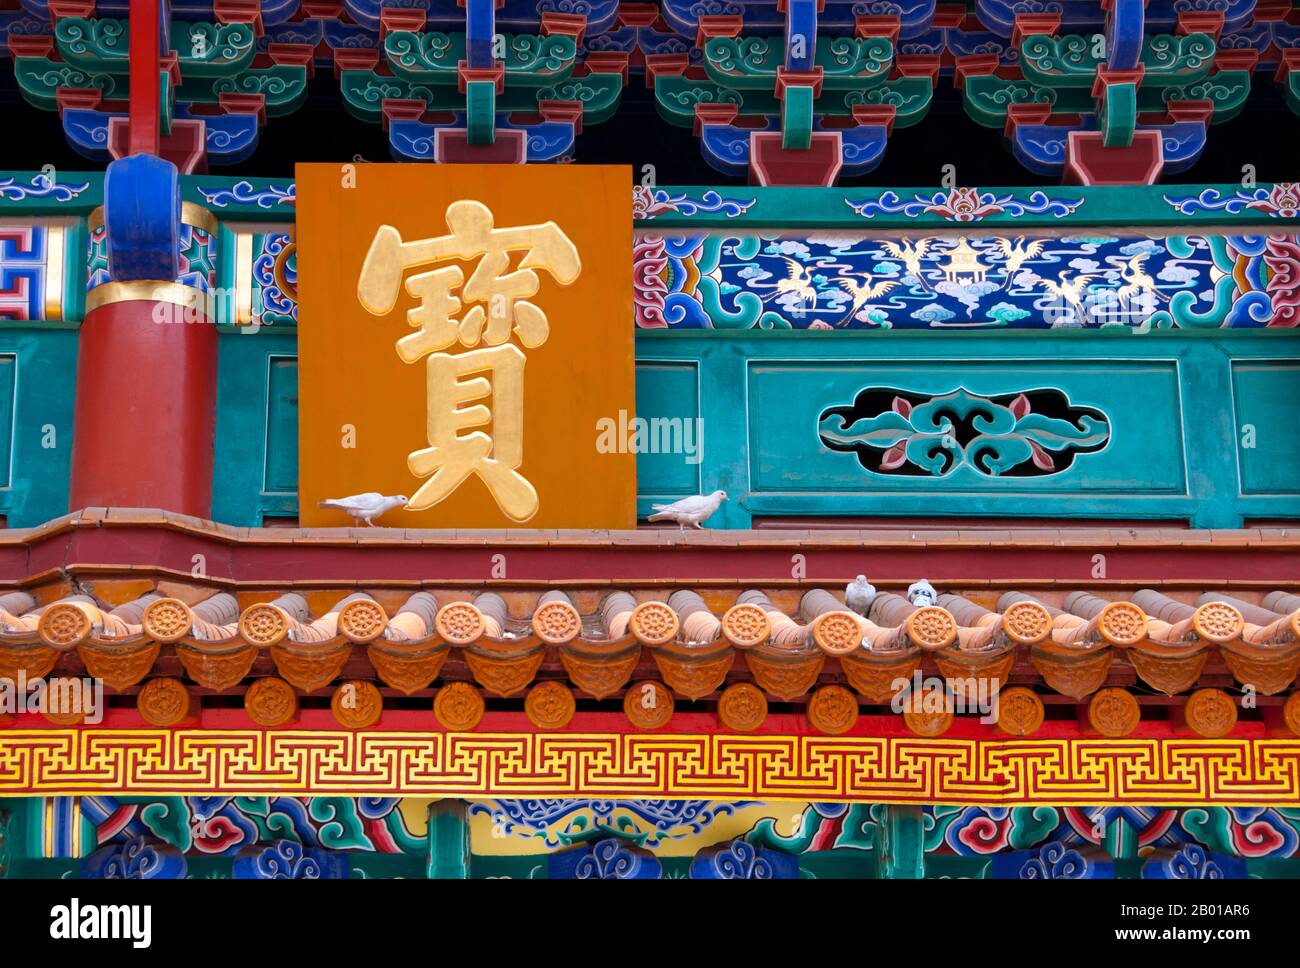 China: Große Halle des Buddha aus der Ming-Dynastie, Yuantong Si (Yuantong-Tempel), Kunming, Provinz Yunnan. Der Yuantong Tempel stammt ursprünglich aus dem Königreich Nanzhao zur Zeit der Tang Dynastie (618-907). Nach zwei großen Restaurierungen und Erweiterungen in der Chenghua-Periode (1465-1487) der Ming-Dynastie und dem 24.. Jahr der Herrschaft von Kaiser Kangxi (1686) in der Qing-Dynastie, nahm der Tempel sein heutiges Design an, mit überdachten Korridoren, Brücken und großen Hallen. Nanzhao (auch Nanchao und Nan Chao) war ein buddhistisches Königreich, das im heutigen Südchina und Südostasien blühte. Stockfoto